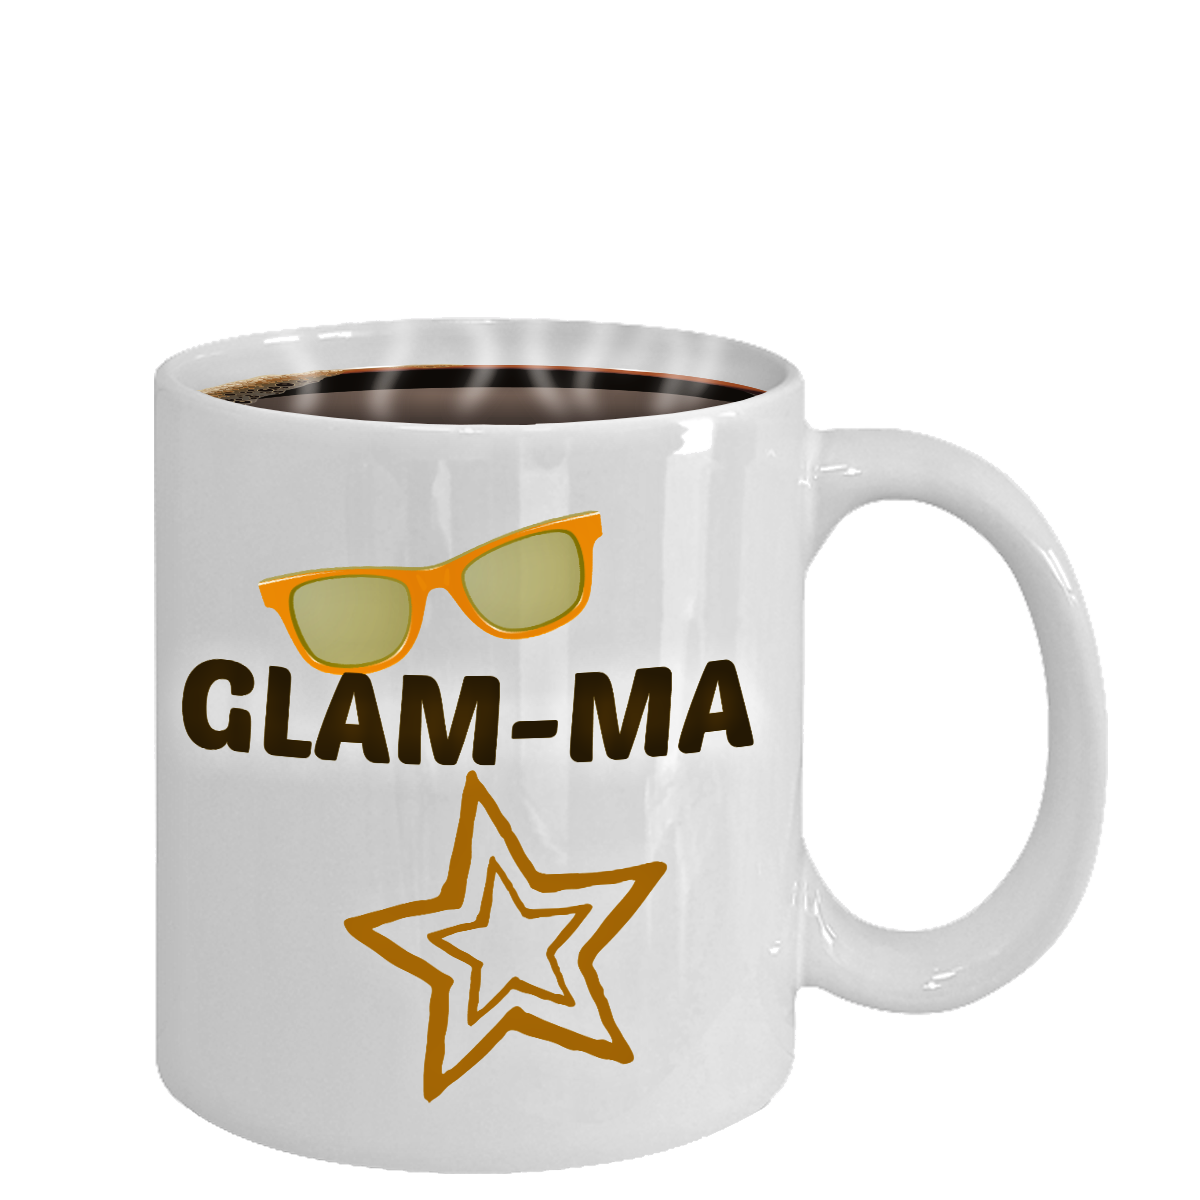 Glam Ma- Novelty Coffee Mug Gift Custom Ceramic Tea Cup For Grandma Nana Cool